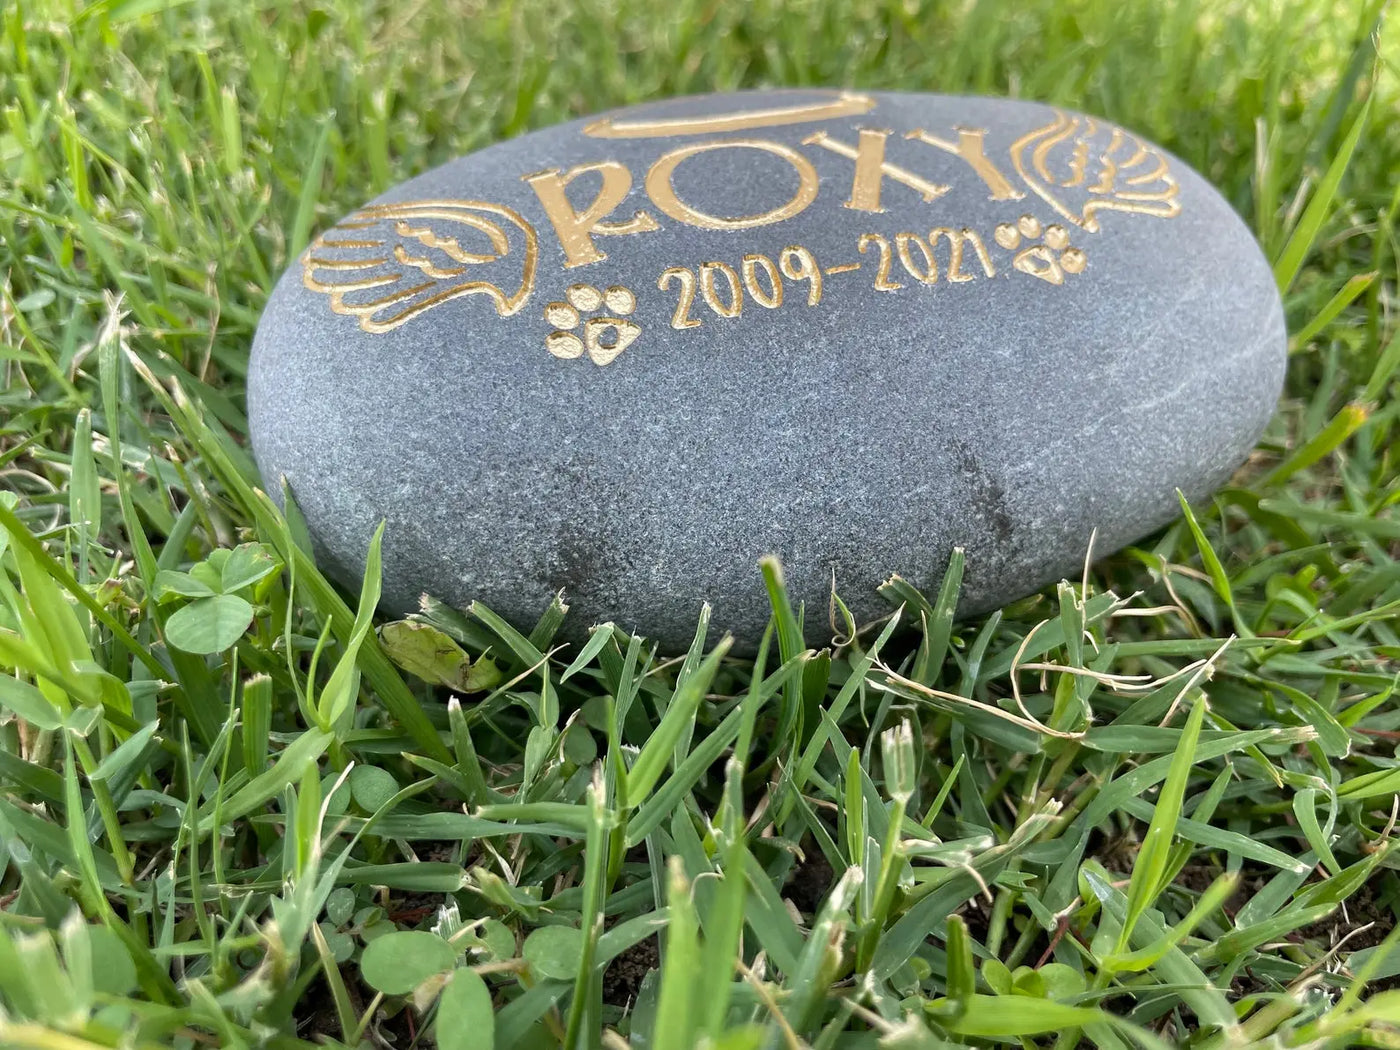 Grave Marker Custom Engraved Pet Memorial Stone Angel wings cat or dog loss Memorial Rock